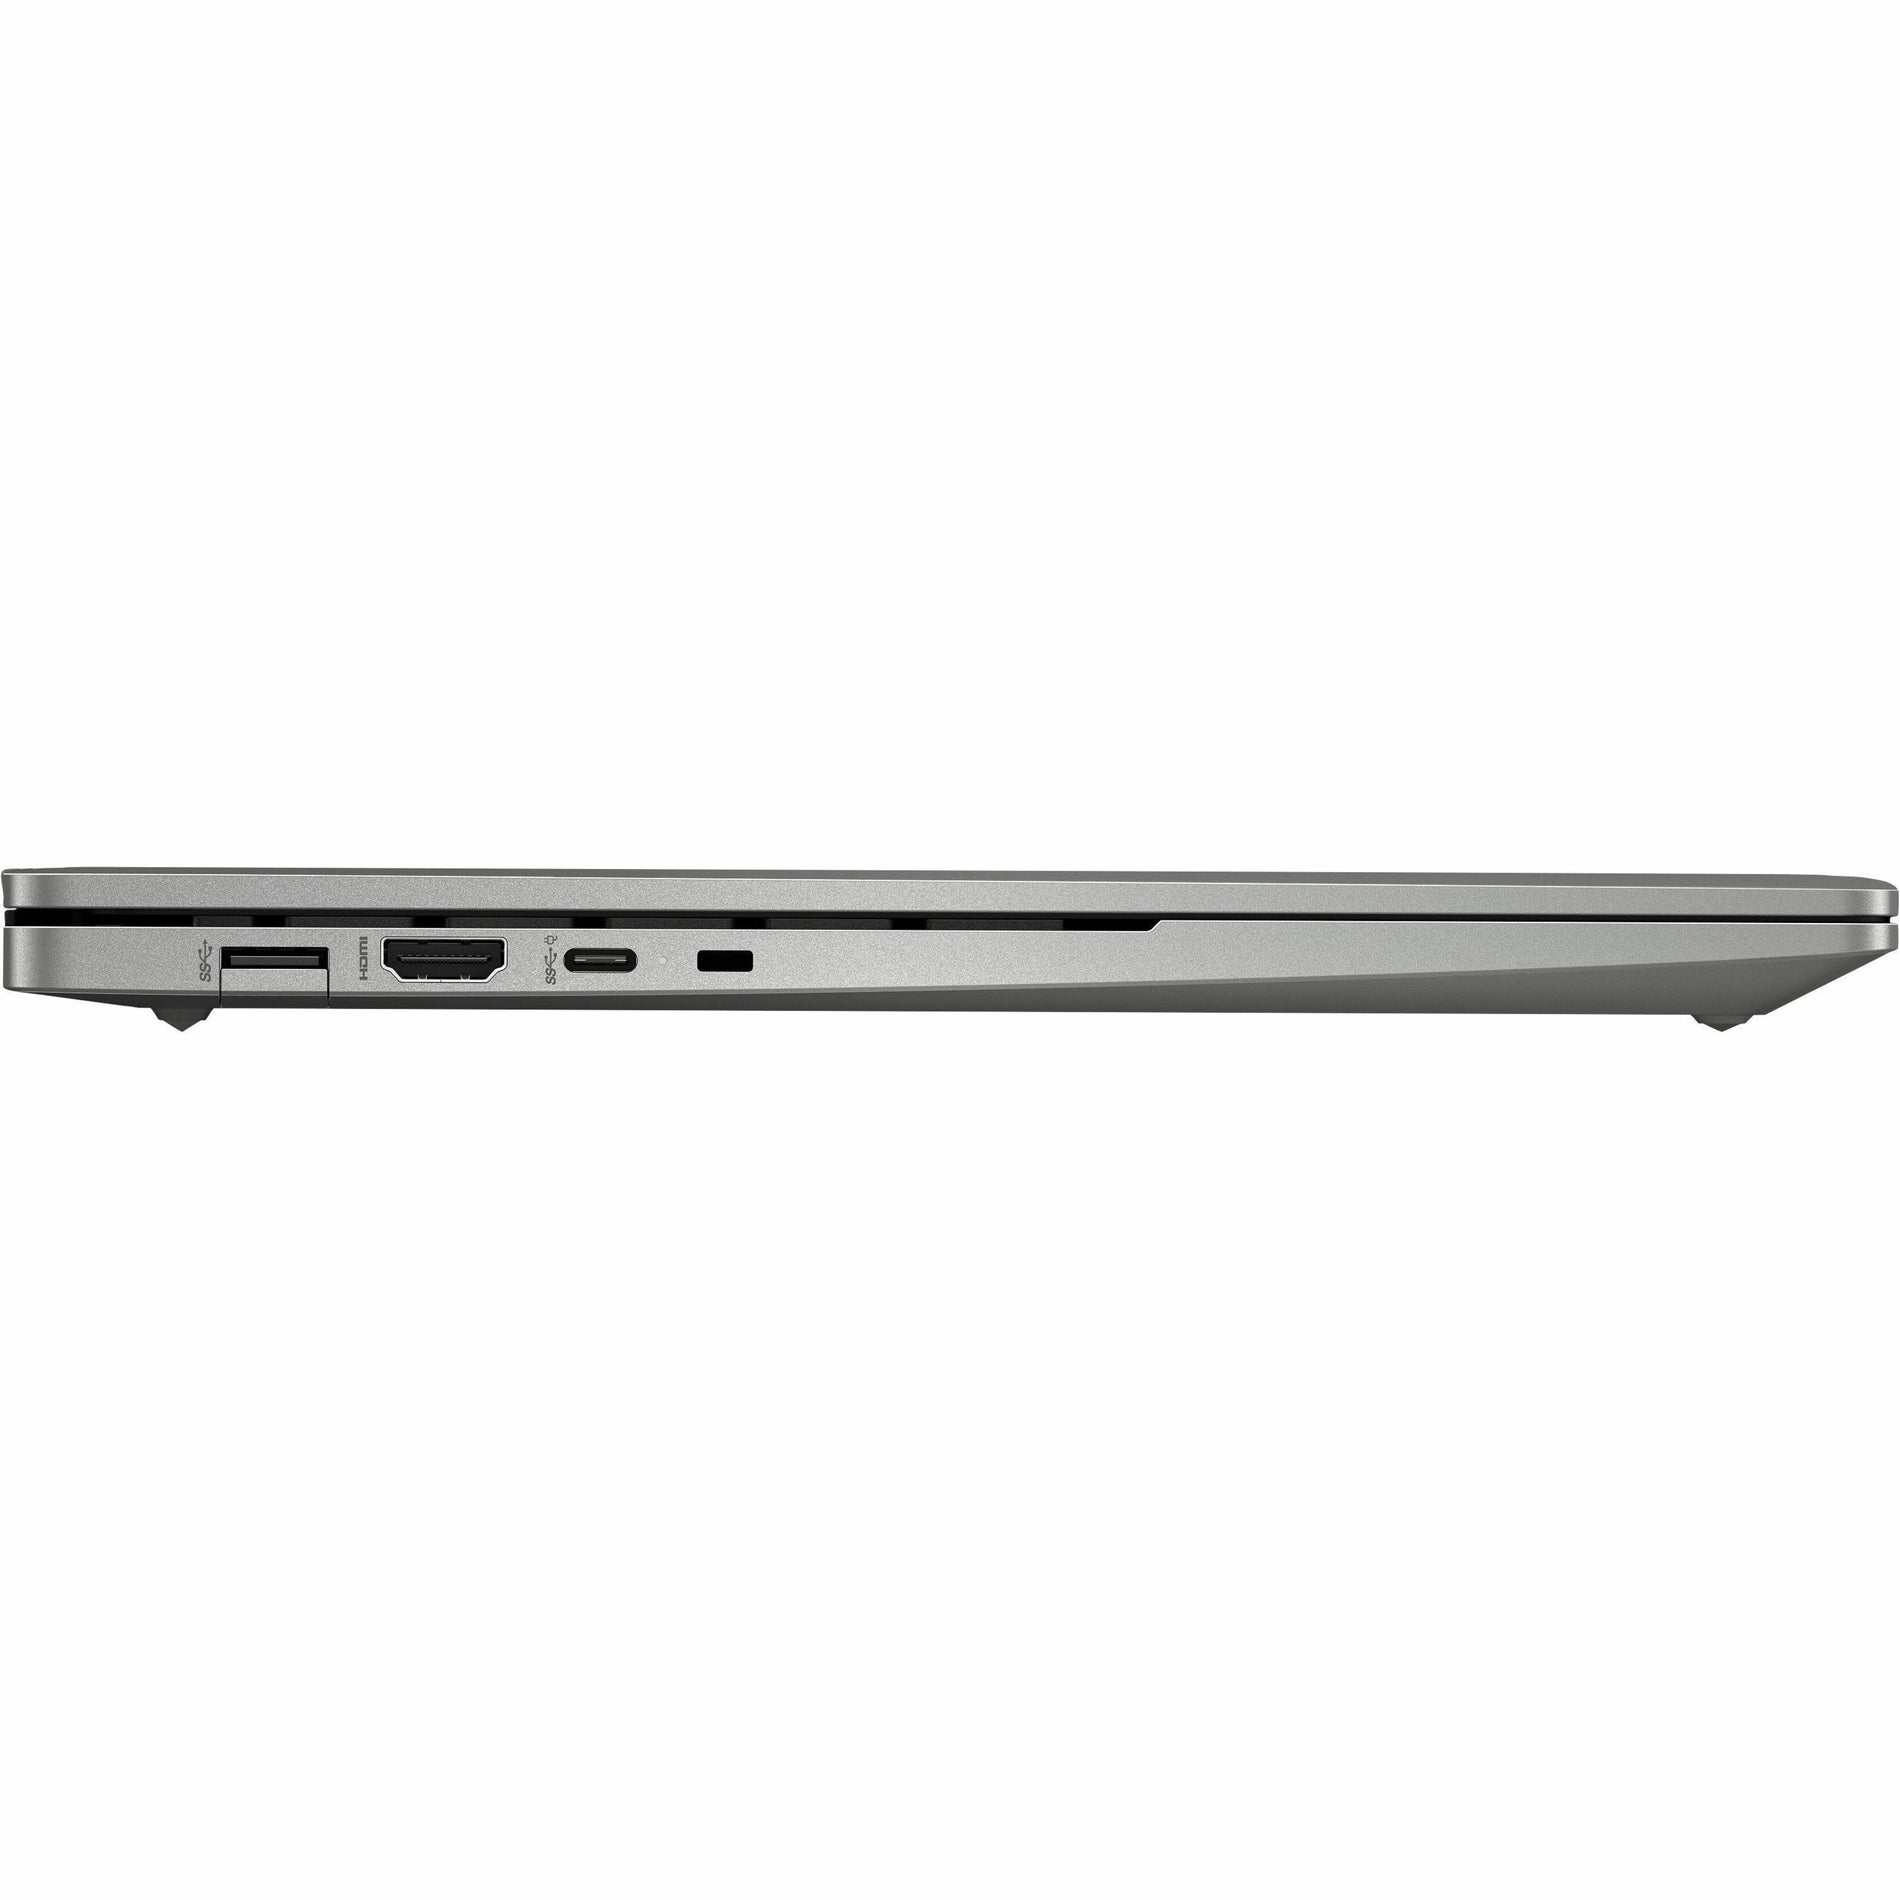 HPI SOURCING - NEW Chromebook 14b-na0000 14b-na0010wm 14" Chromebook - Full HD - 1920 x 1080 - AMD Ryzen 3 3250C Dual-core (2 Core) 2.60 GHz - 4 GB Total RAM - 4 GB On-board Memory - 128 GB SSD - Mineral Silver Aluminum (35G89UA#ABA)